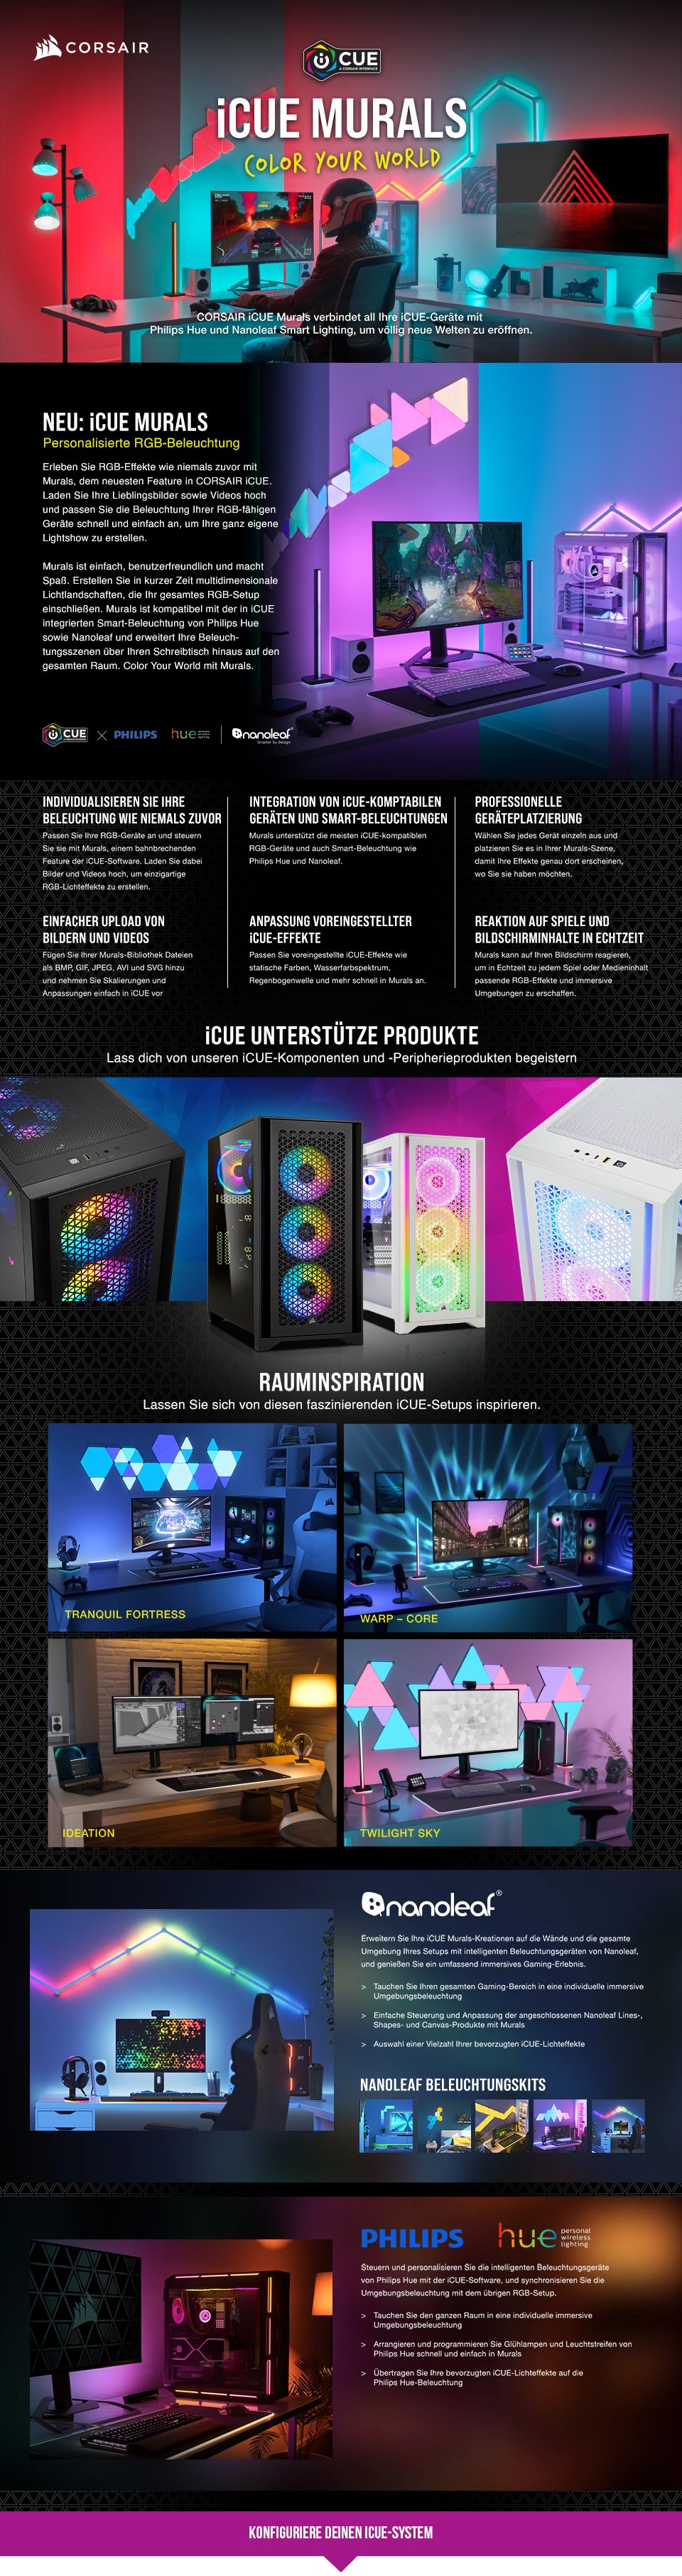 RGB-PCs: Tauche ein in die Welt der Farben!